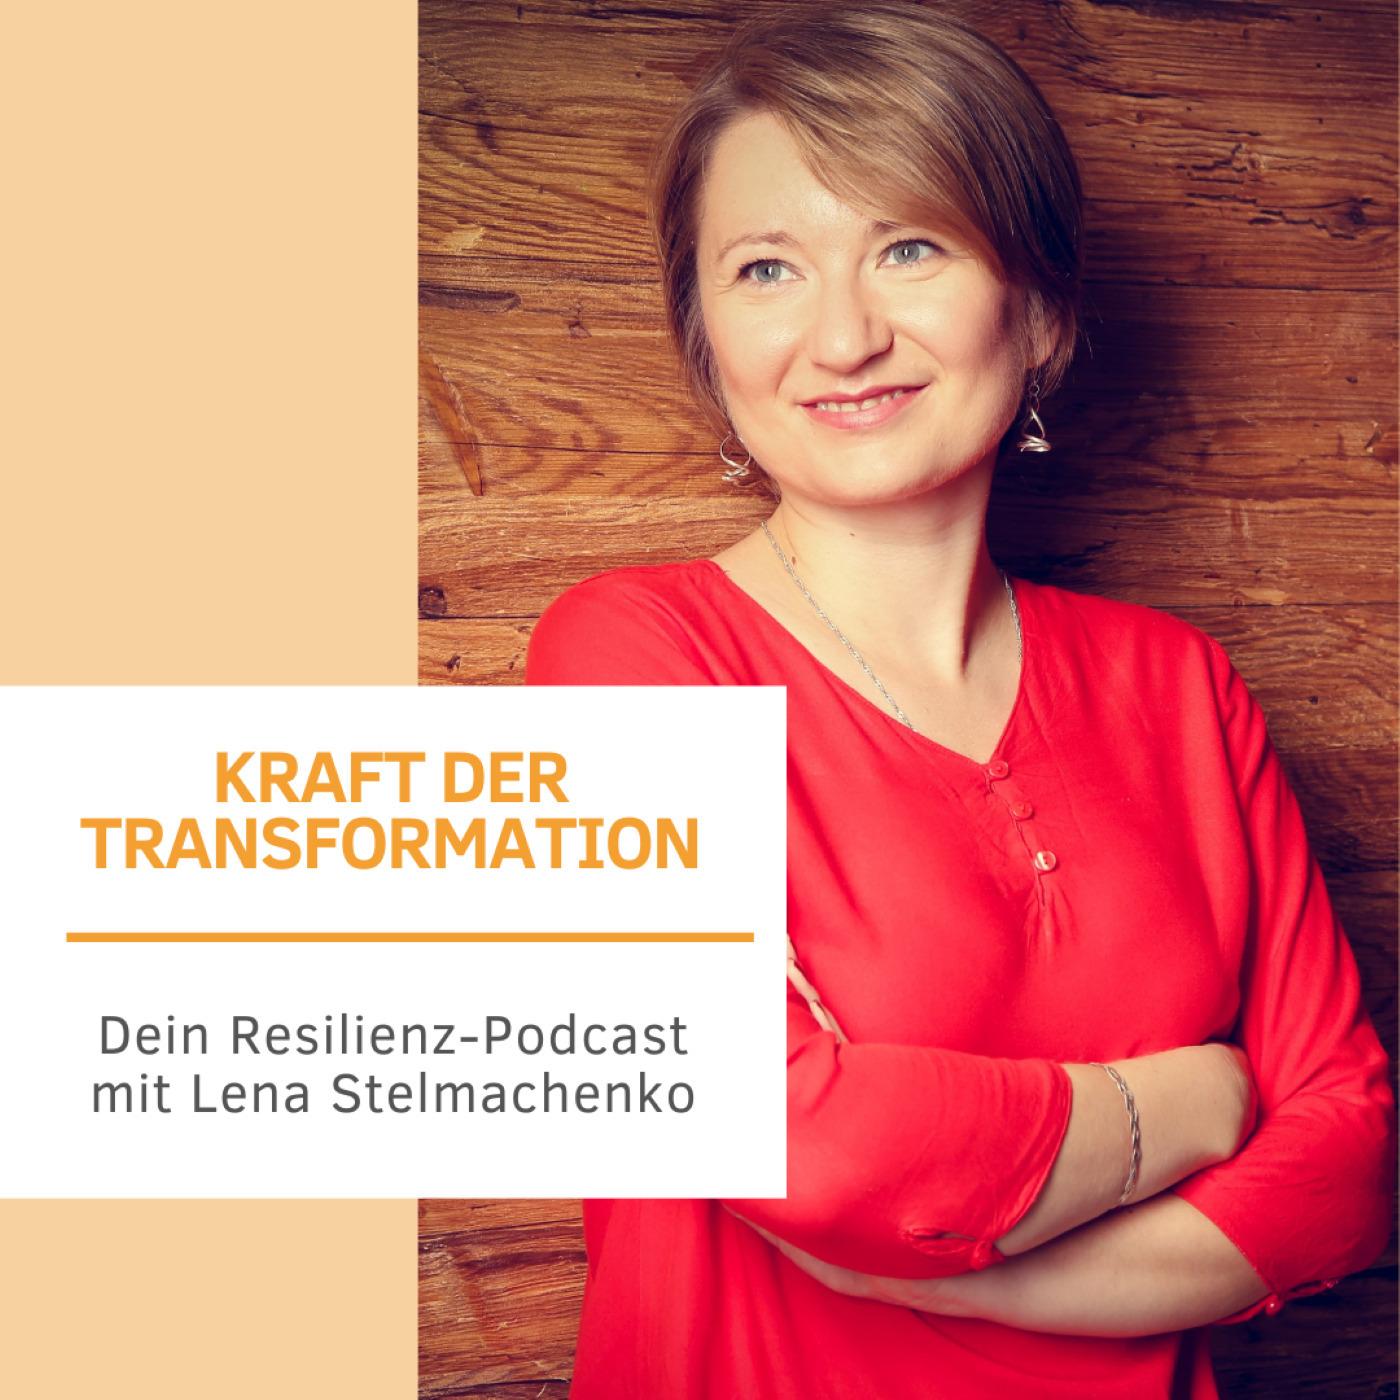 Kraft der Transformation - Dein Resilienz Podcast